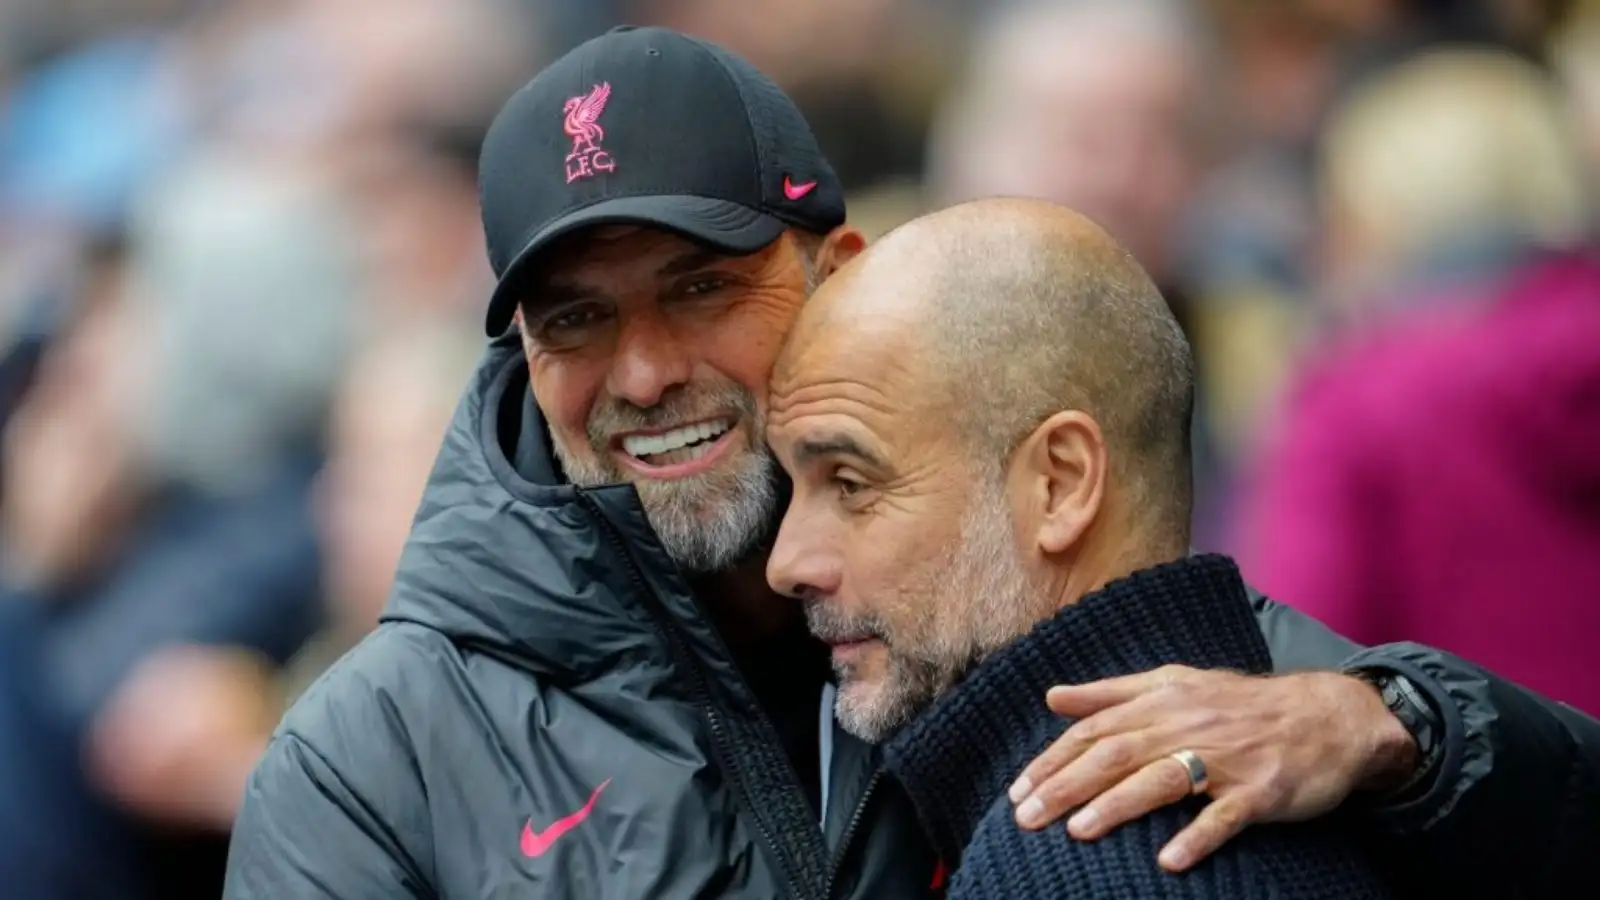 Liverpool manager Jurgen Klopp hugs Manchester City boss Pep Guardiola before a match.